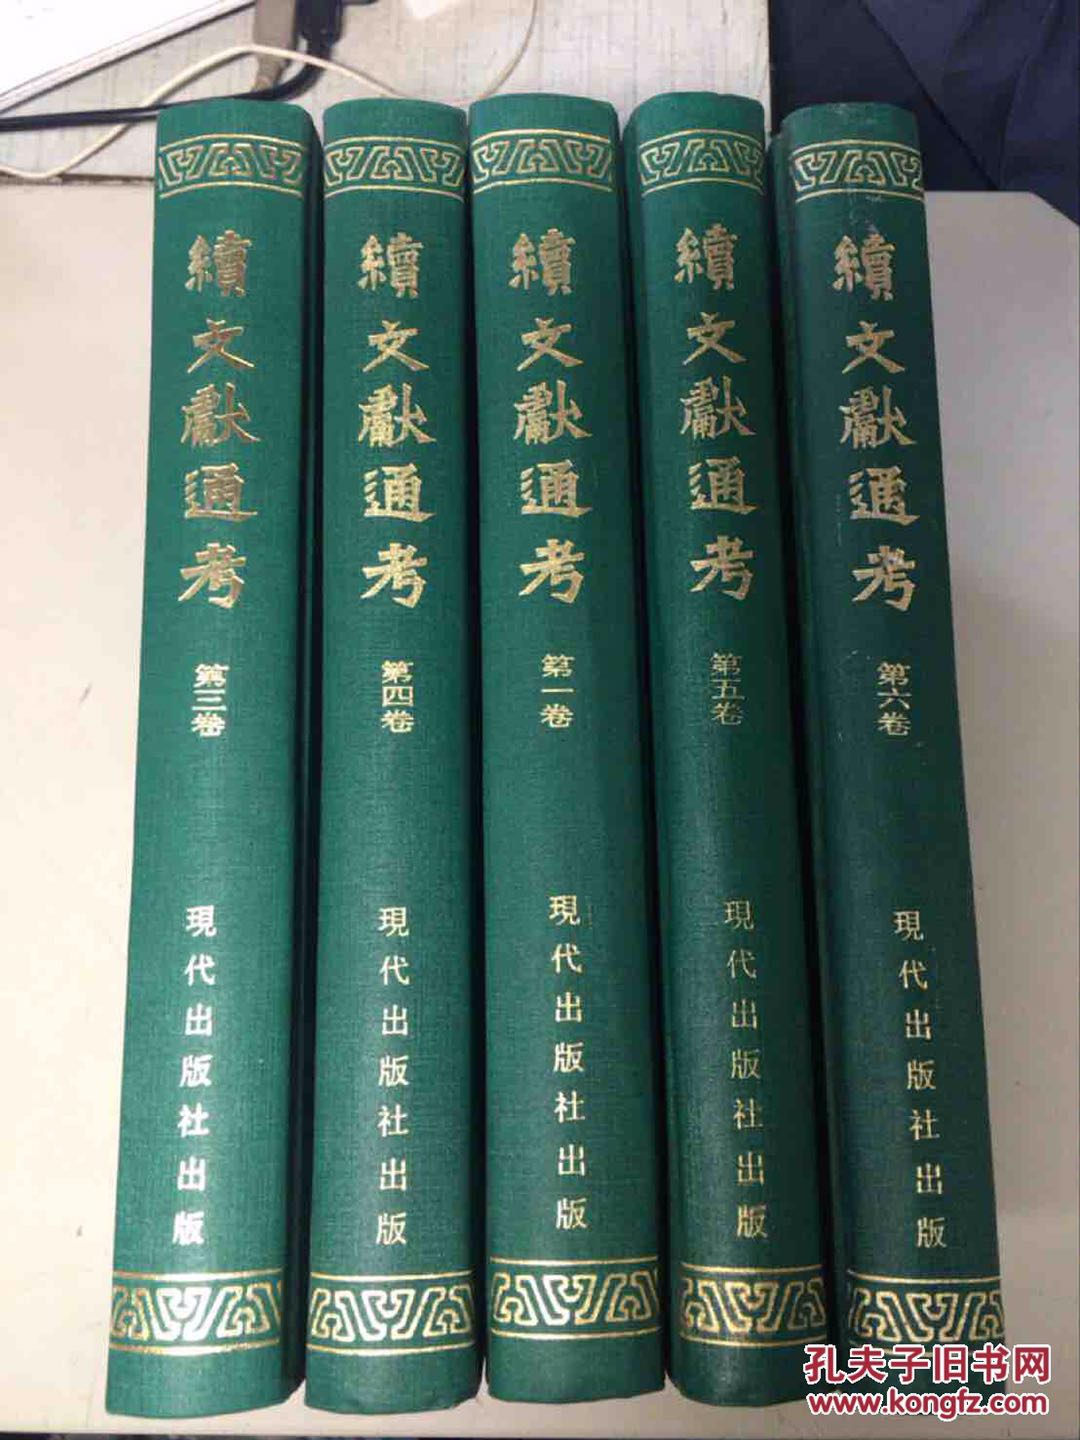 北京 十八里店 二手书 出版社新书 图书馆旧书收二手书 图书